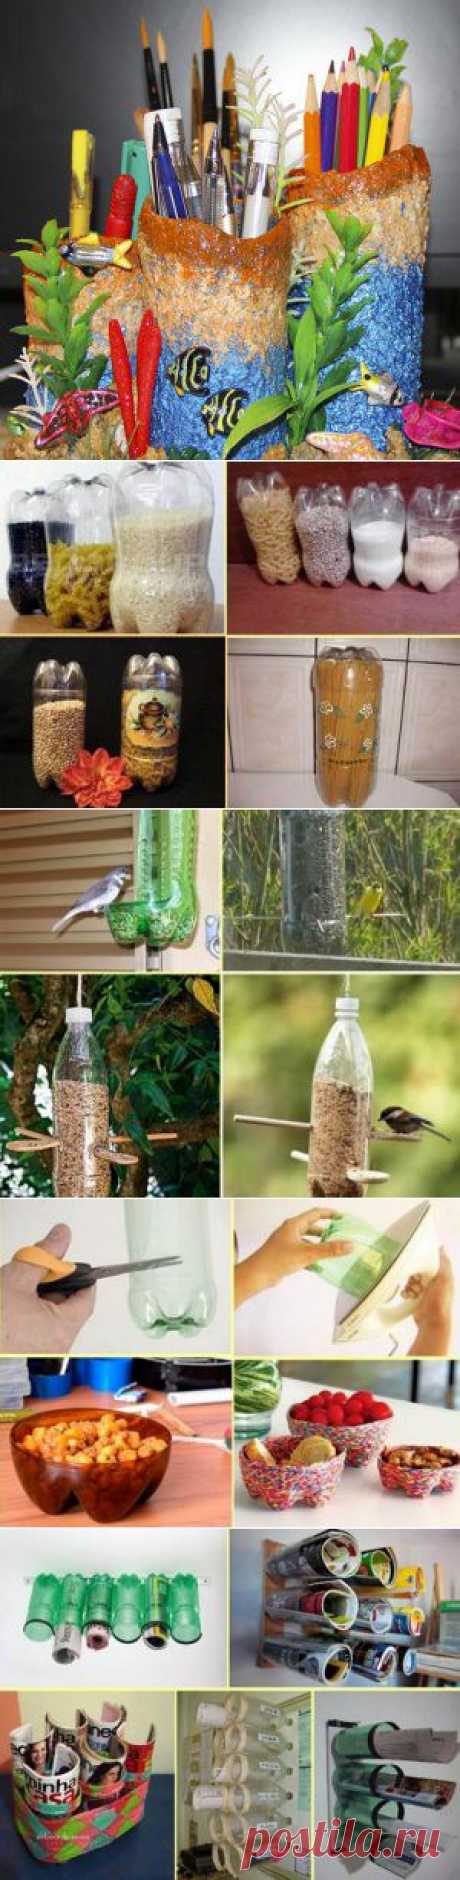 Усадьба | Своими руками : 9 идей для повторного использования пластиковых бутылок